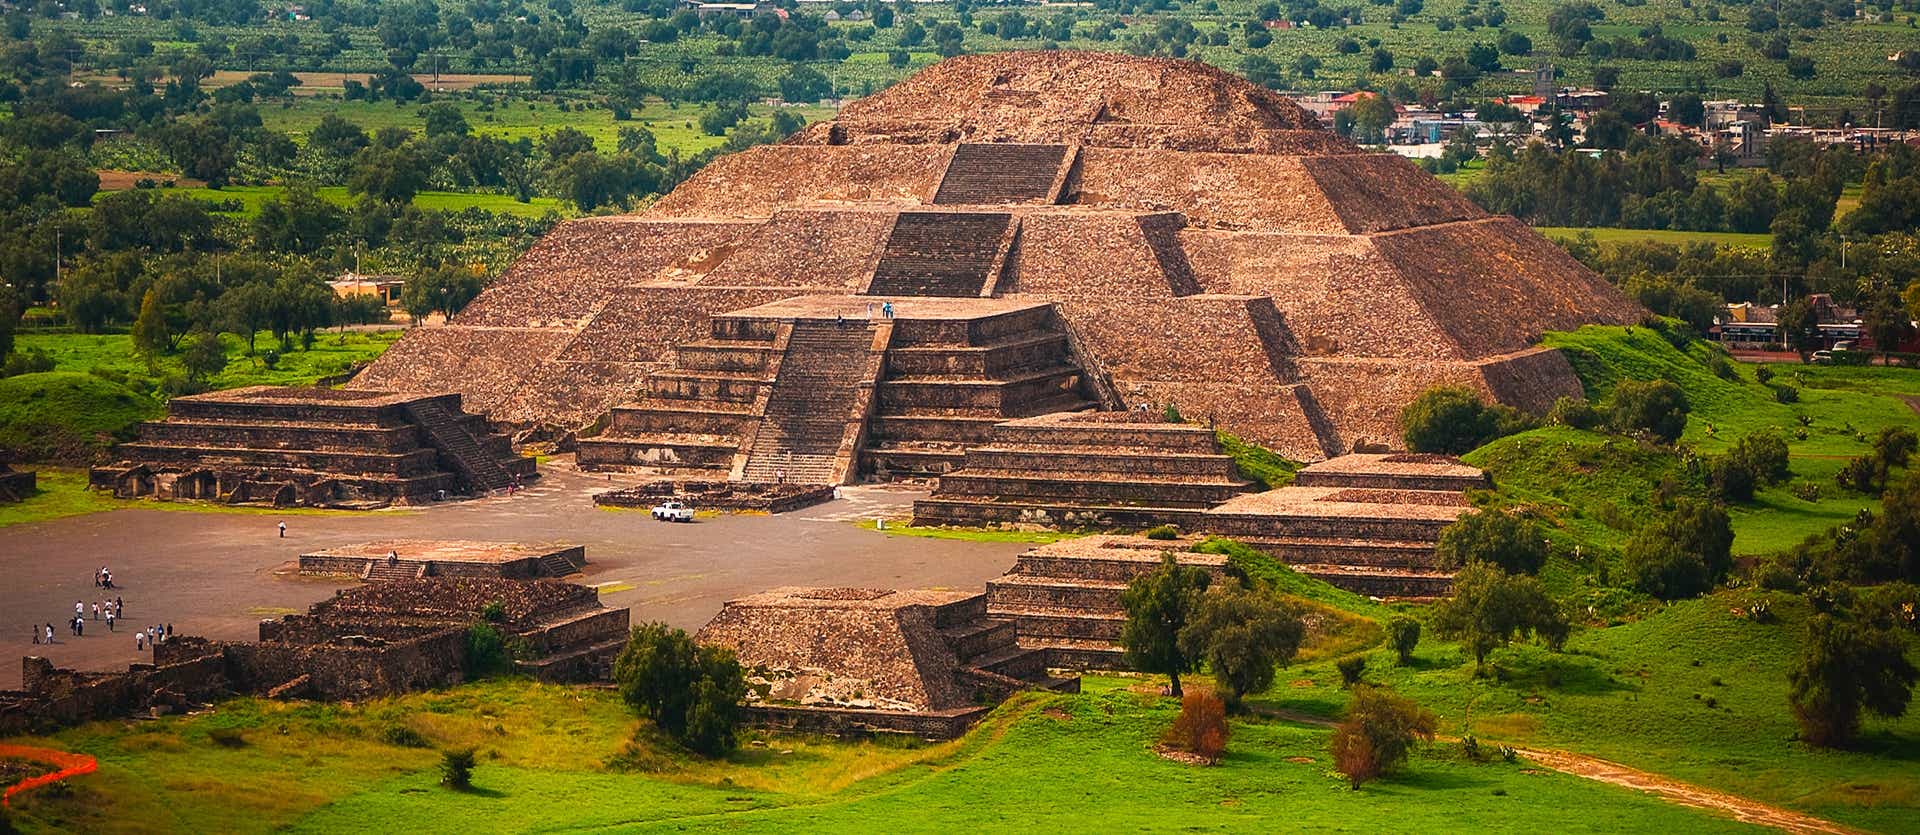 Ruinas de Teotihuacán <span class="iconos separador"></span> Valle de México